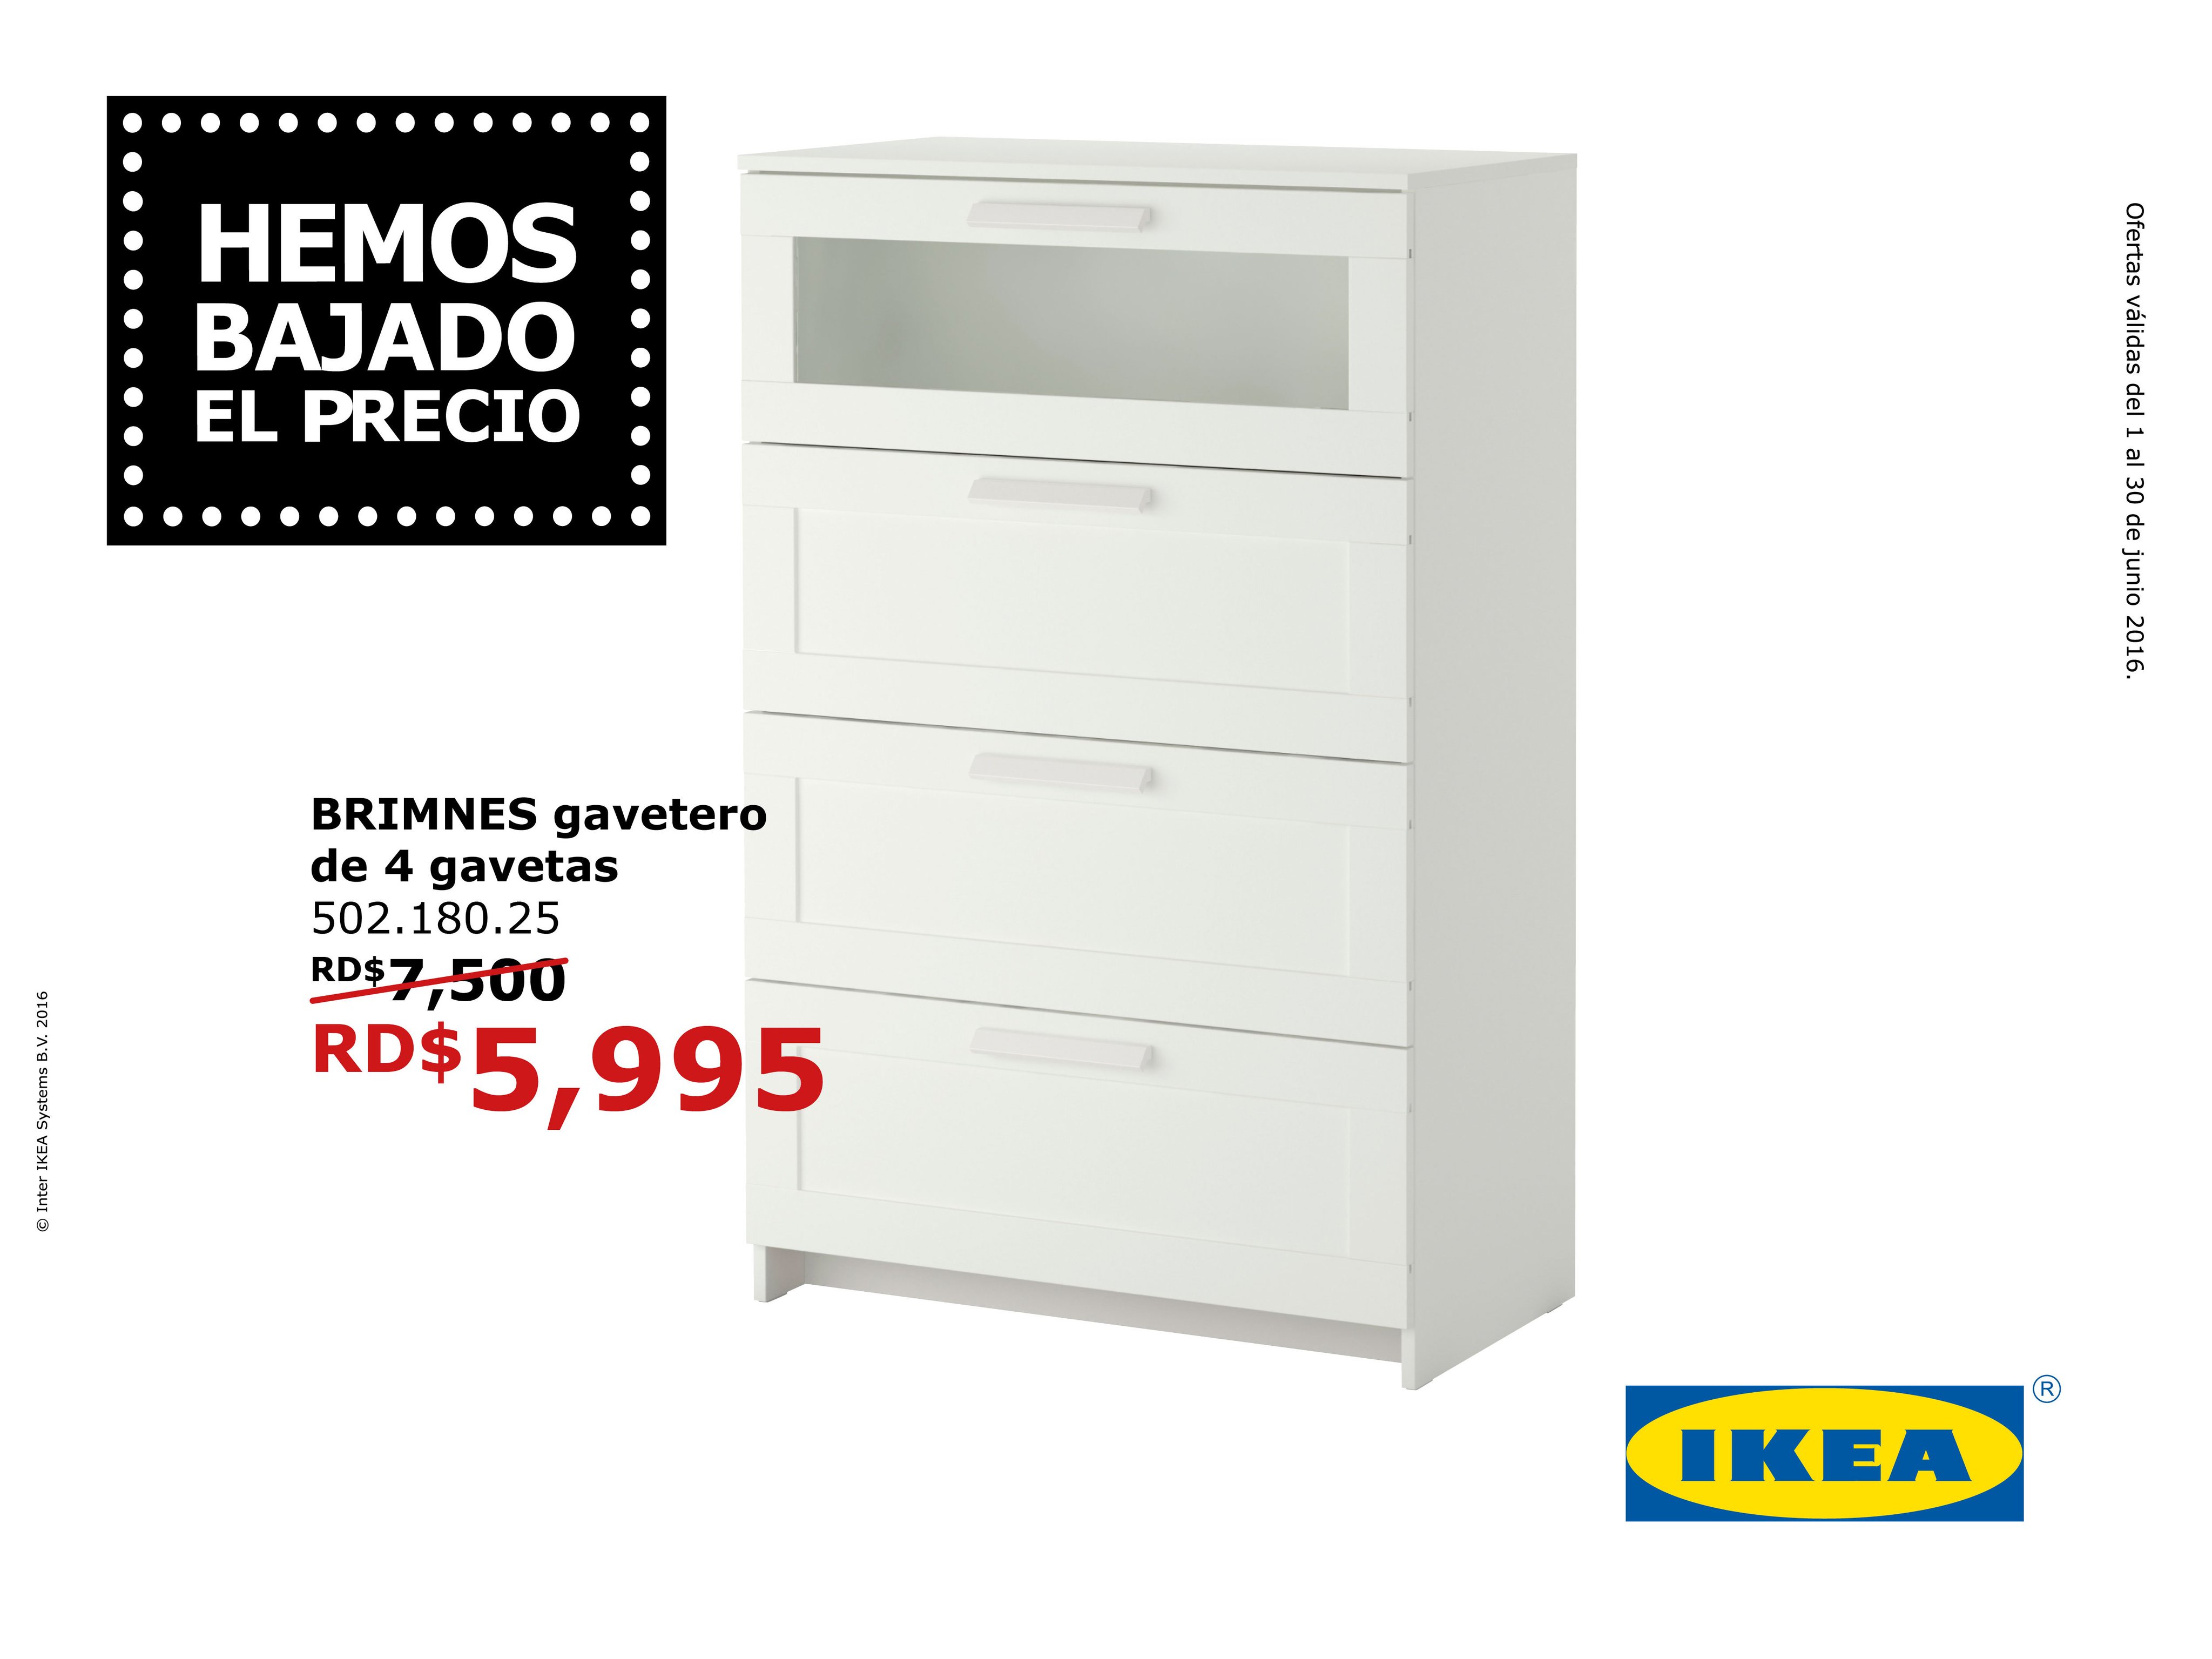 IKEA Dominicana on X: ¡Organiza tu dormitorio! Busca tu gavetero BRIMNES  de 4 gavetas a este precio del 1 al 30 de junio. #IKEAdominicana   / X